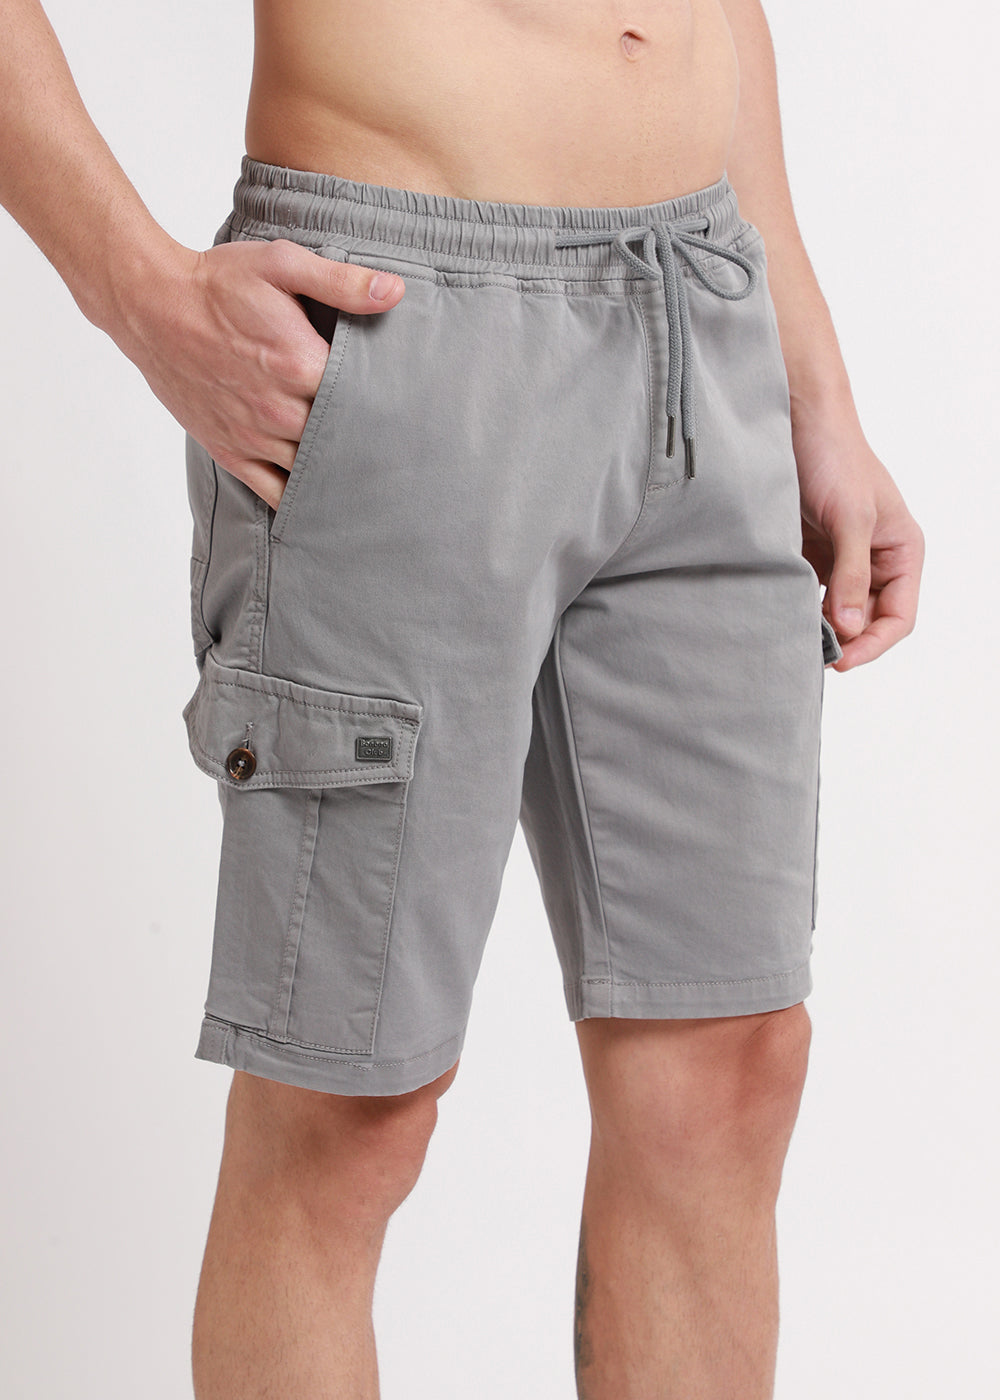 Brocky Grey Cotton Cargo Shorts3